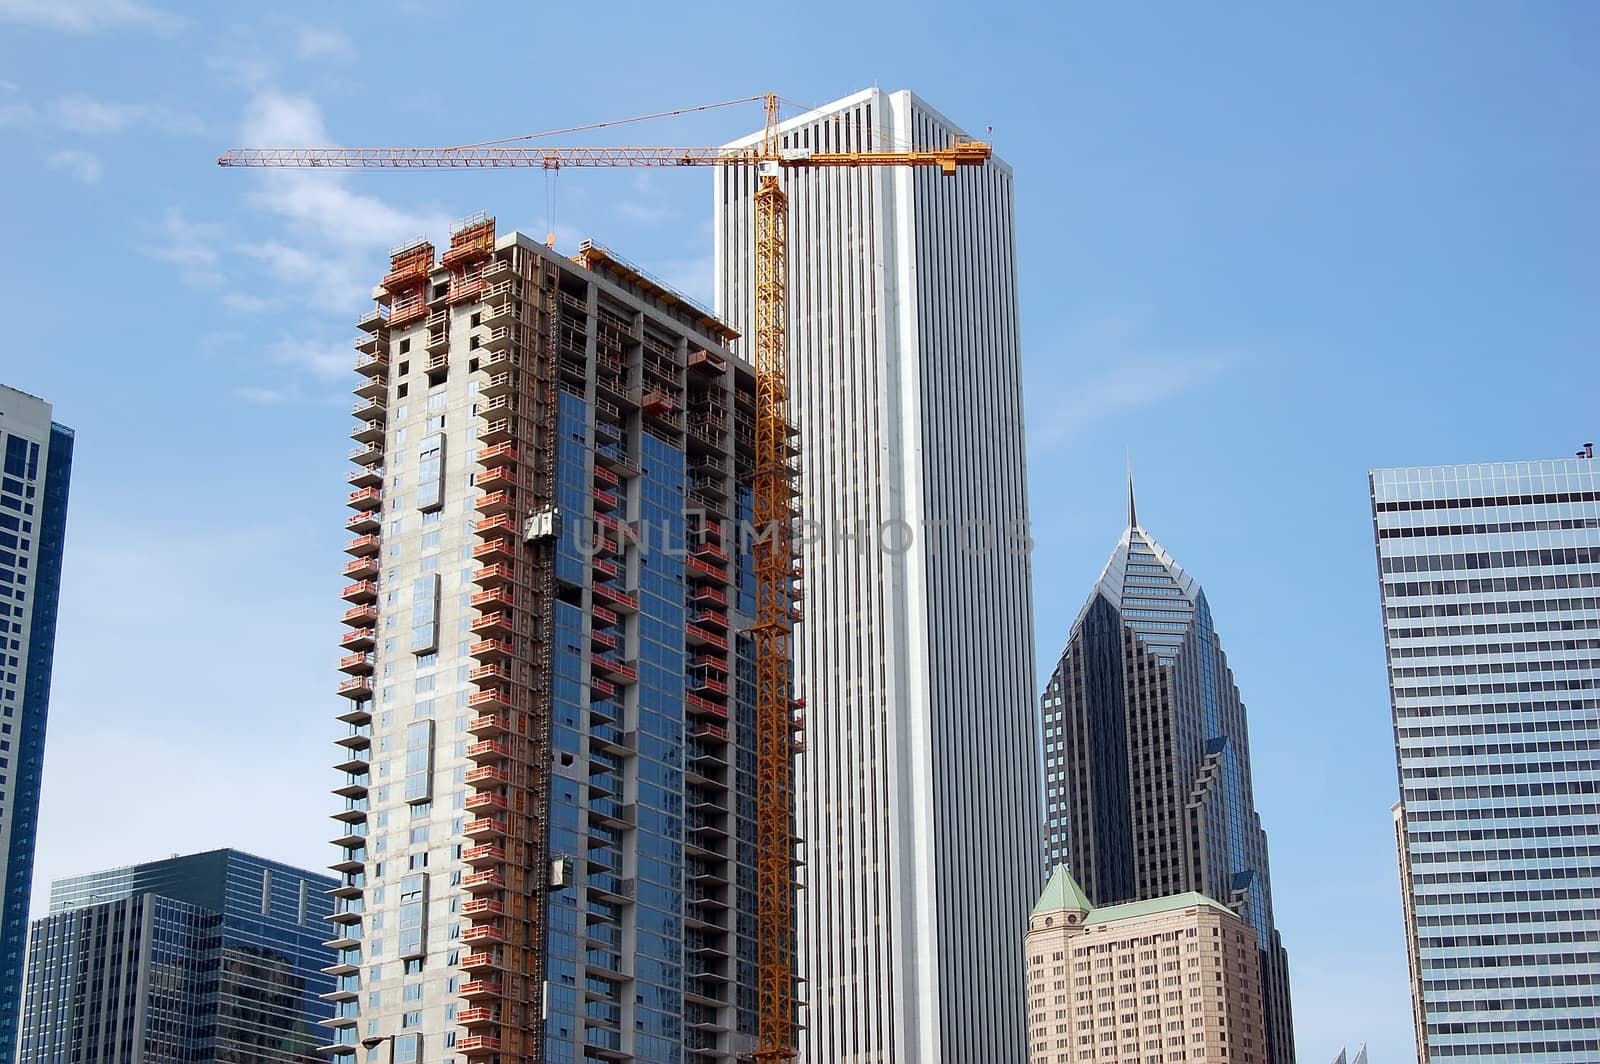 Skyscraper in construction by nialat